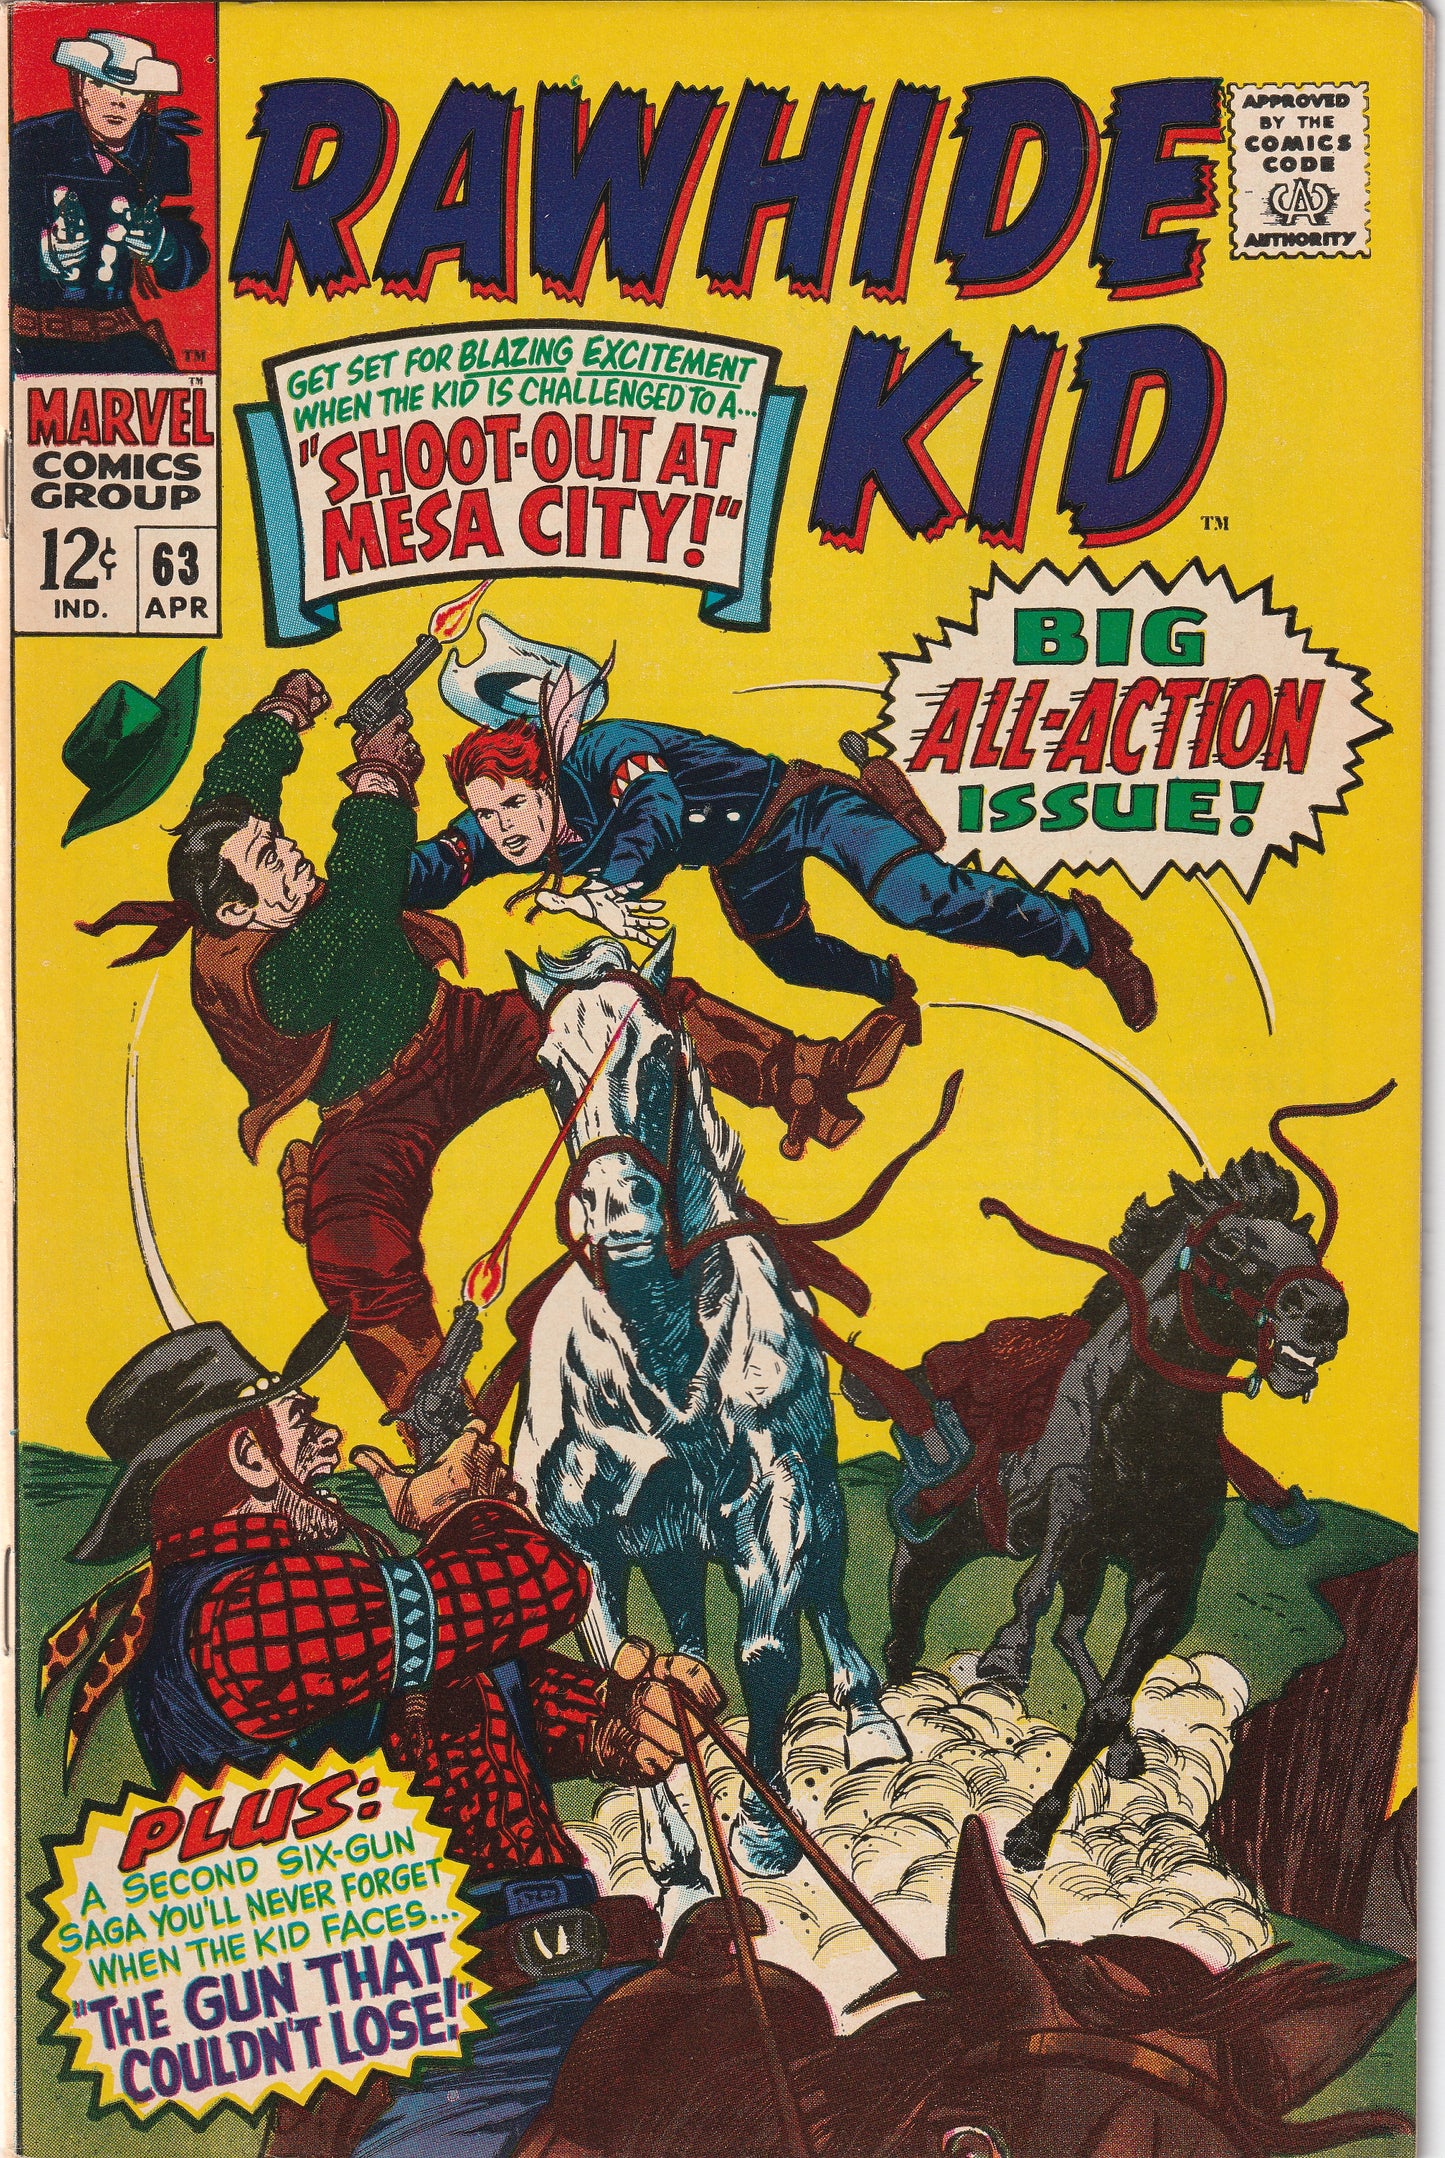 Rawhide Kid #63 (1968)